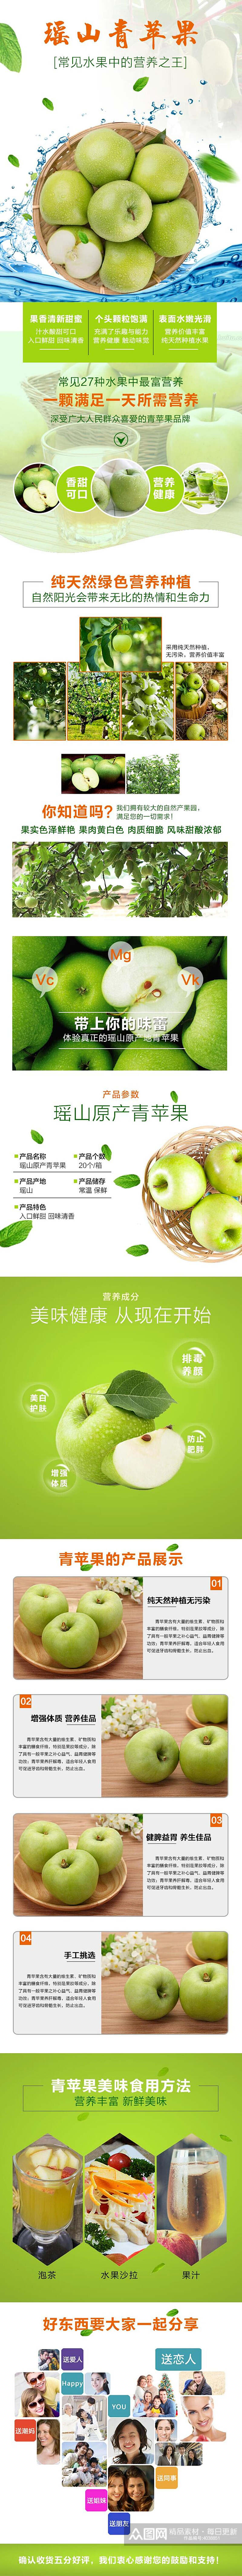 瑶山青苹果水果电商详情页素材